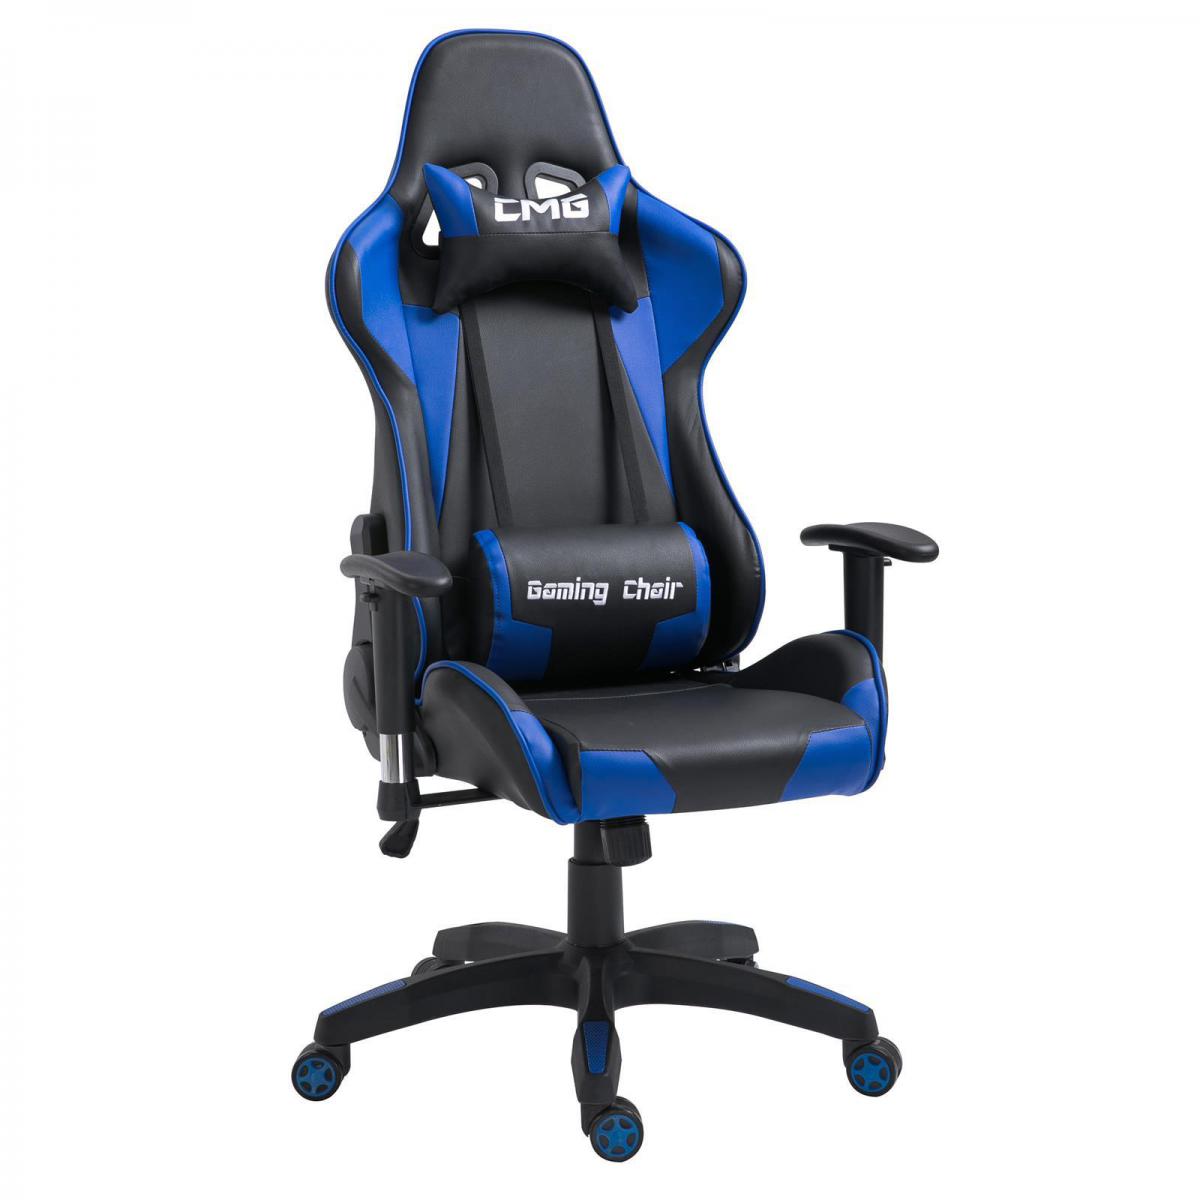 Idimex - Chaise de bureau GAMING, revêtement synthétique noir et bleu - Chaise gamer